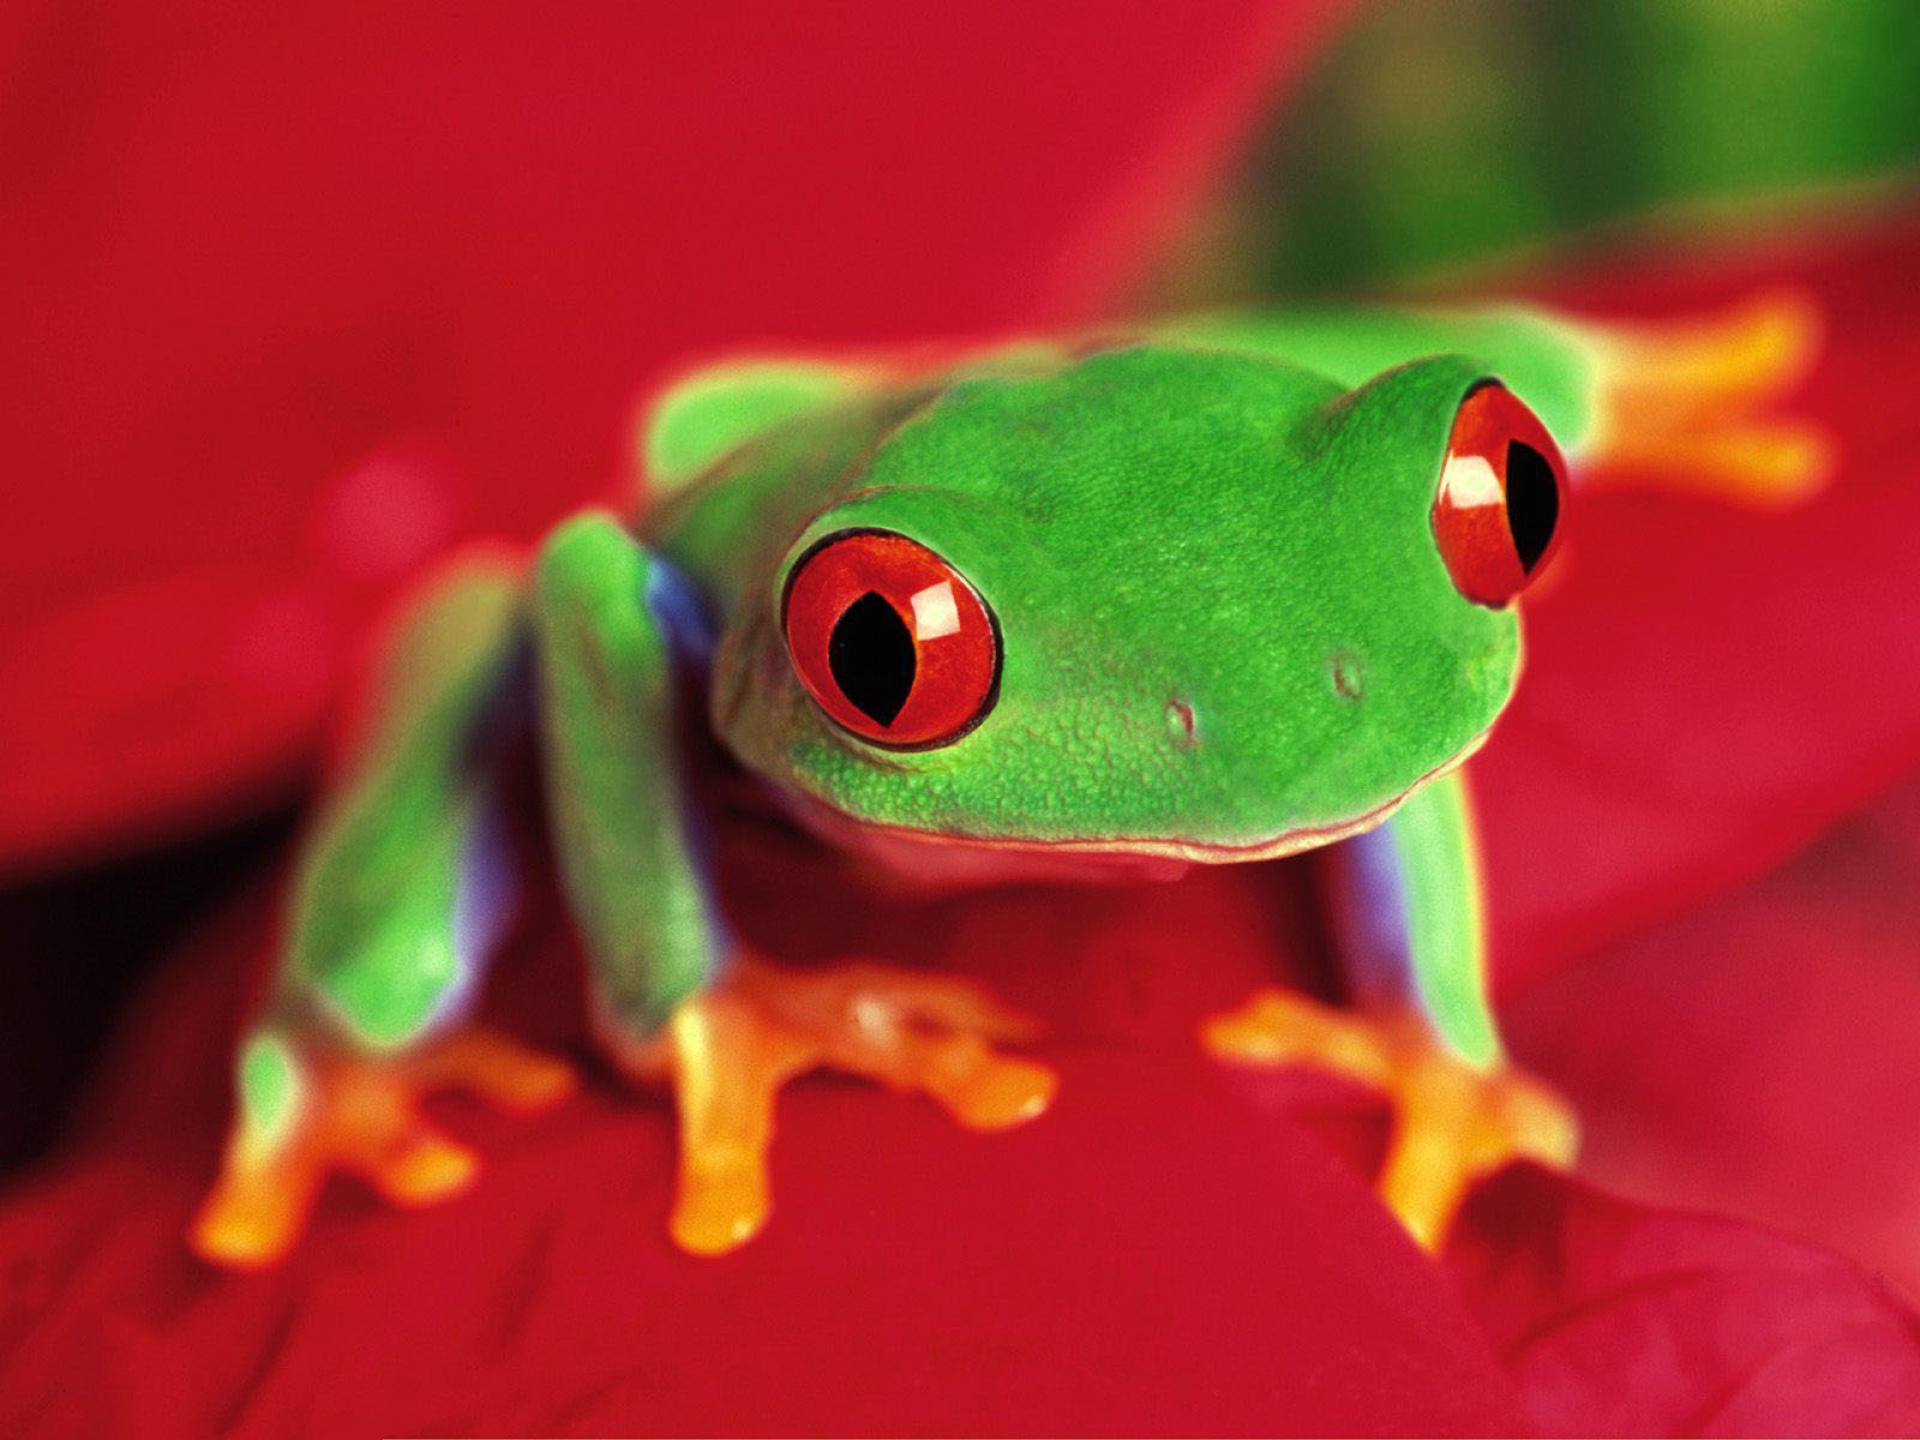 红眼树蛙高清壁纸 桌面背景 19x1440